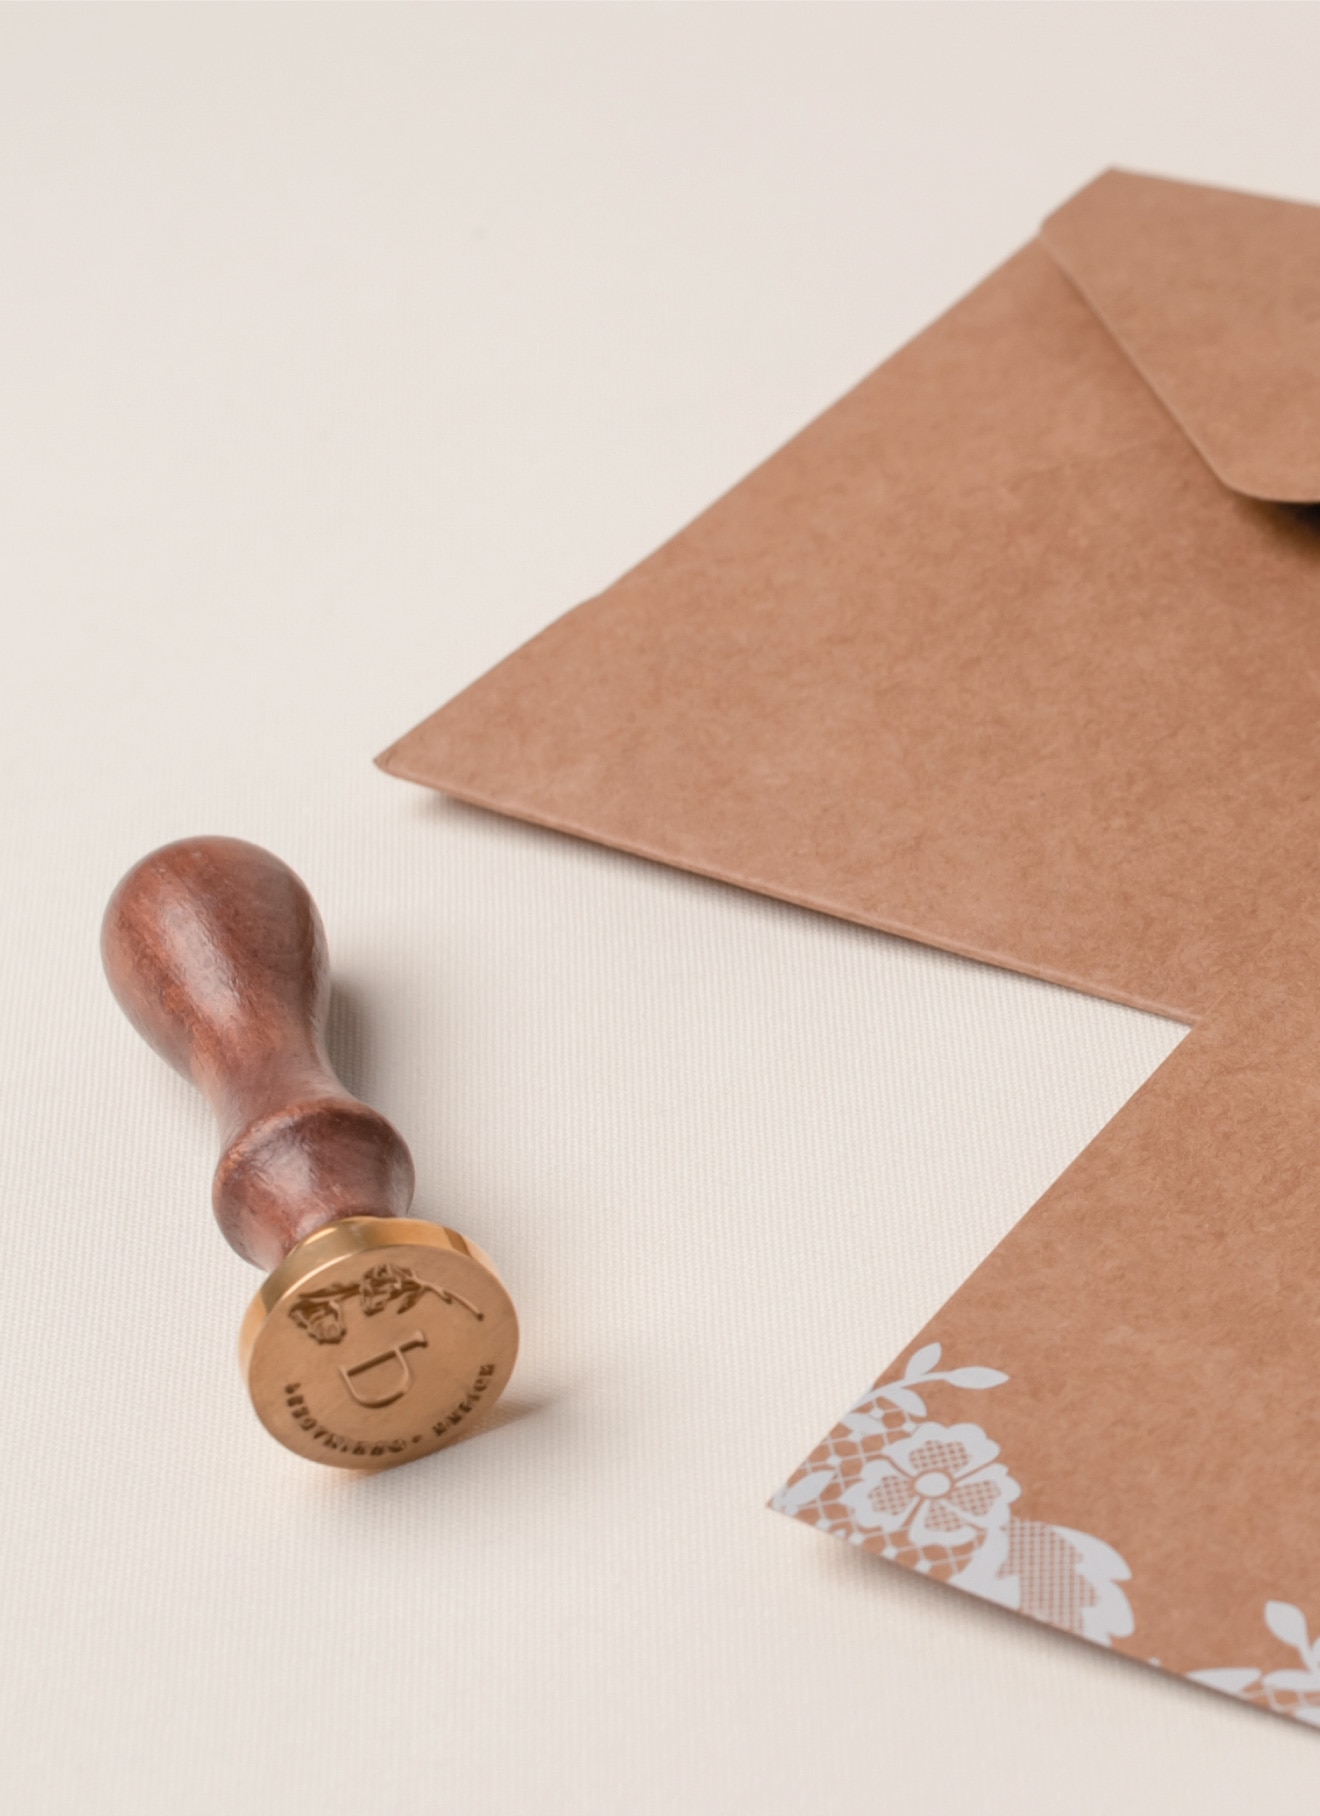 Convite de casamento em craft com impressão a branco e com um sinete castanho